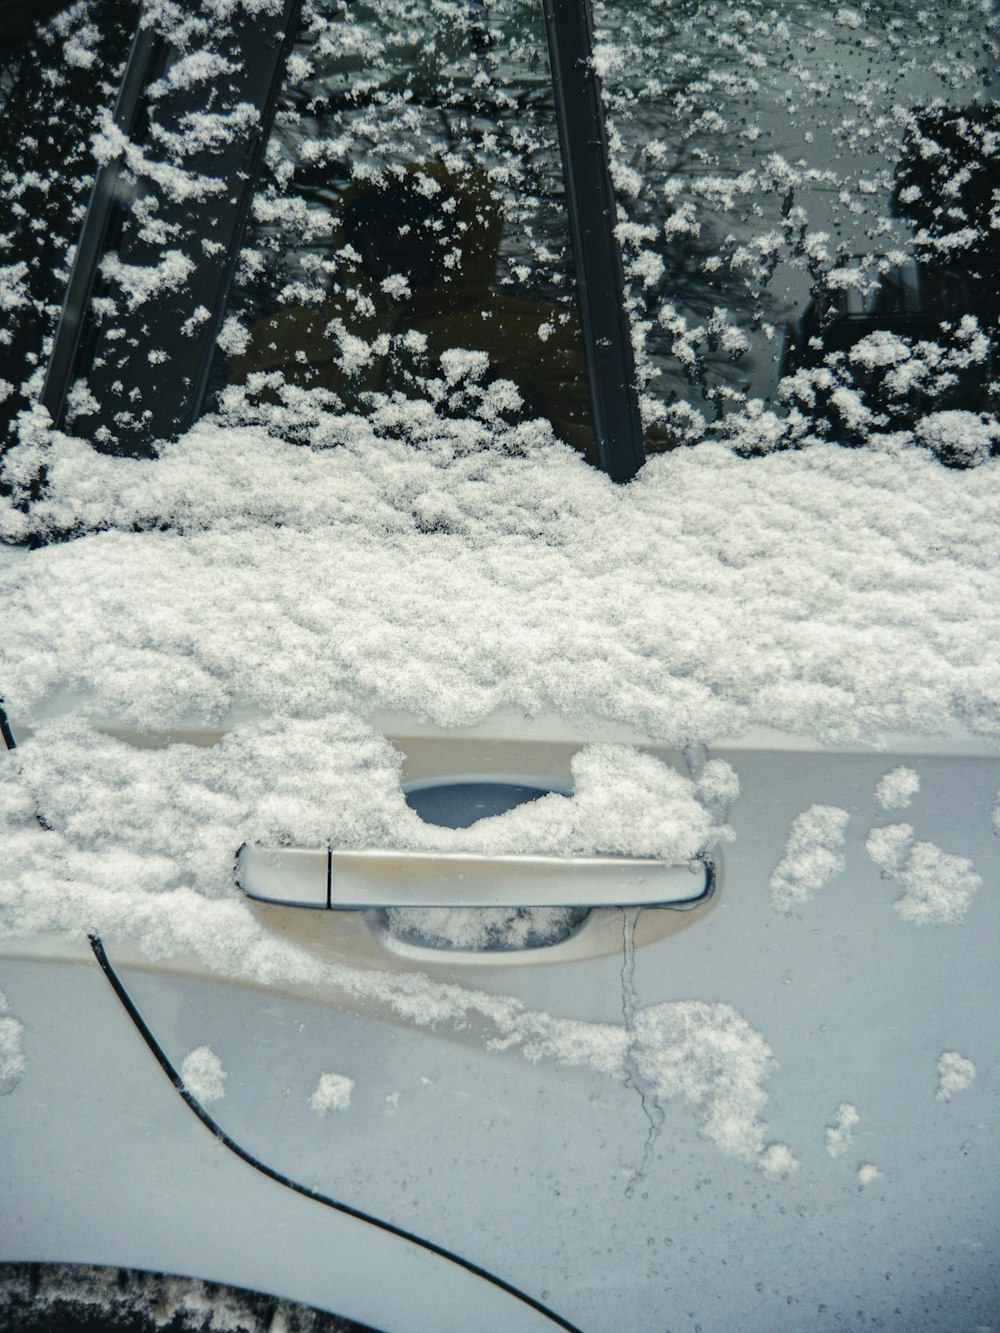 Un coche cubierto de nieve con una manija de puerta